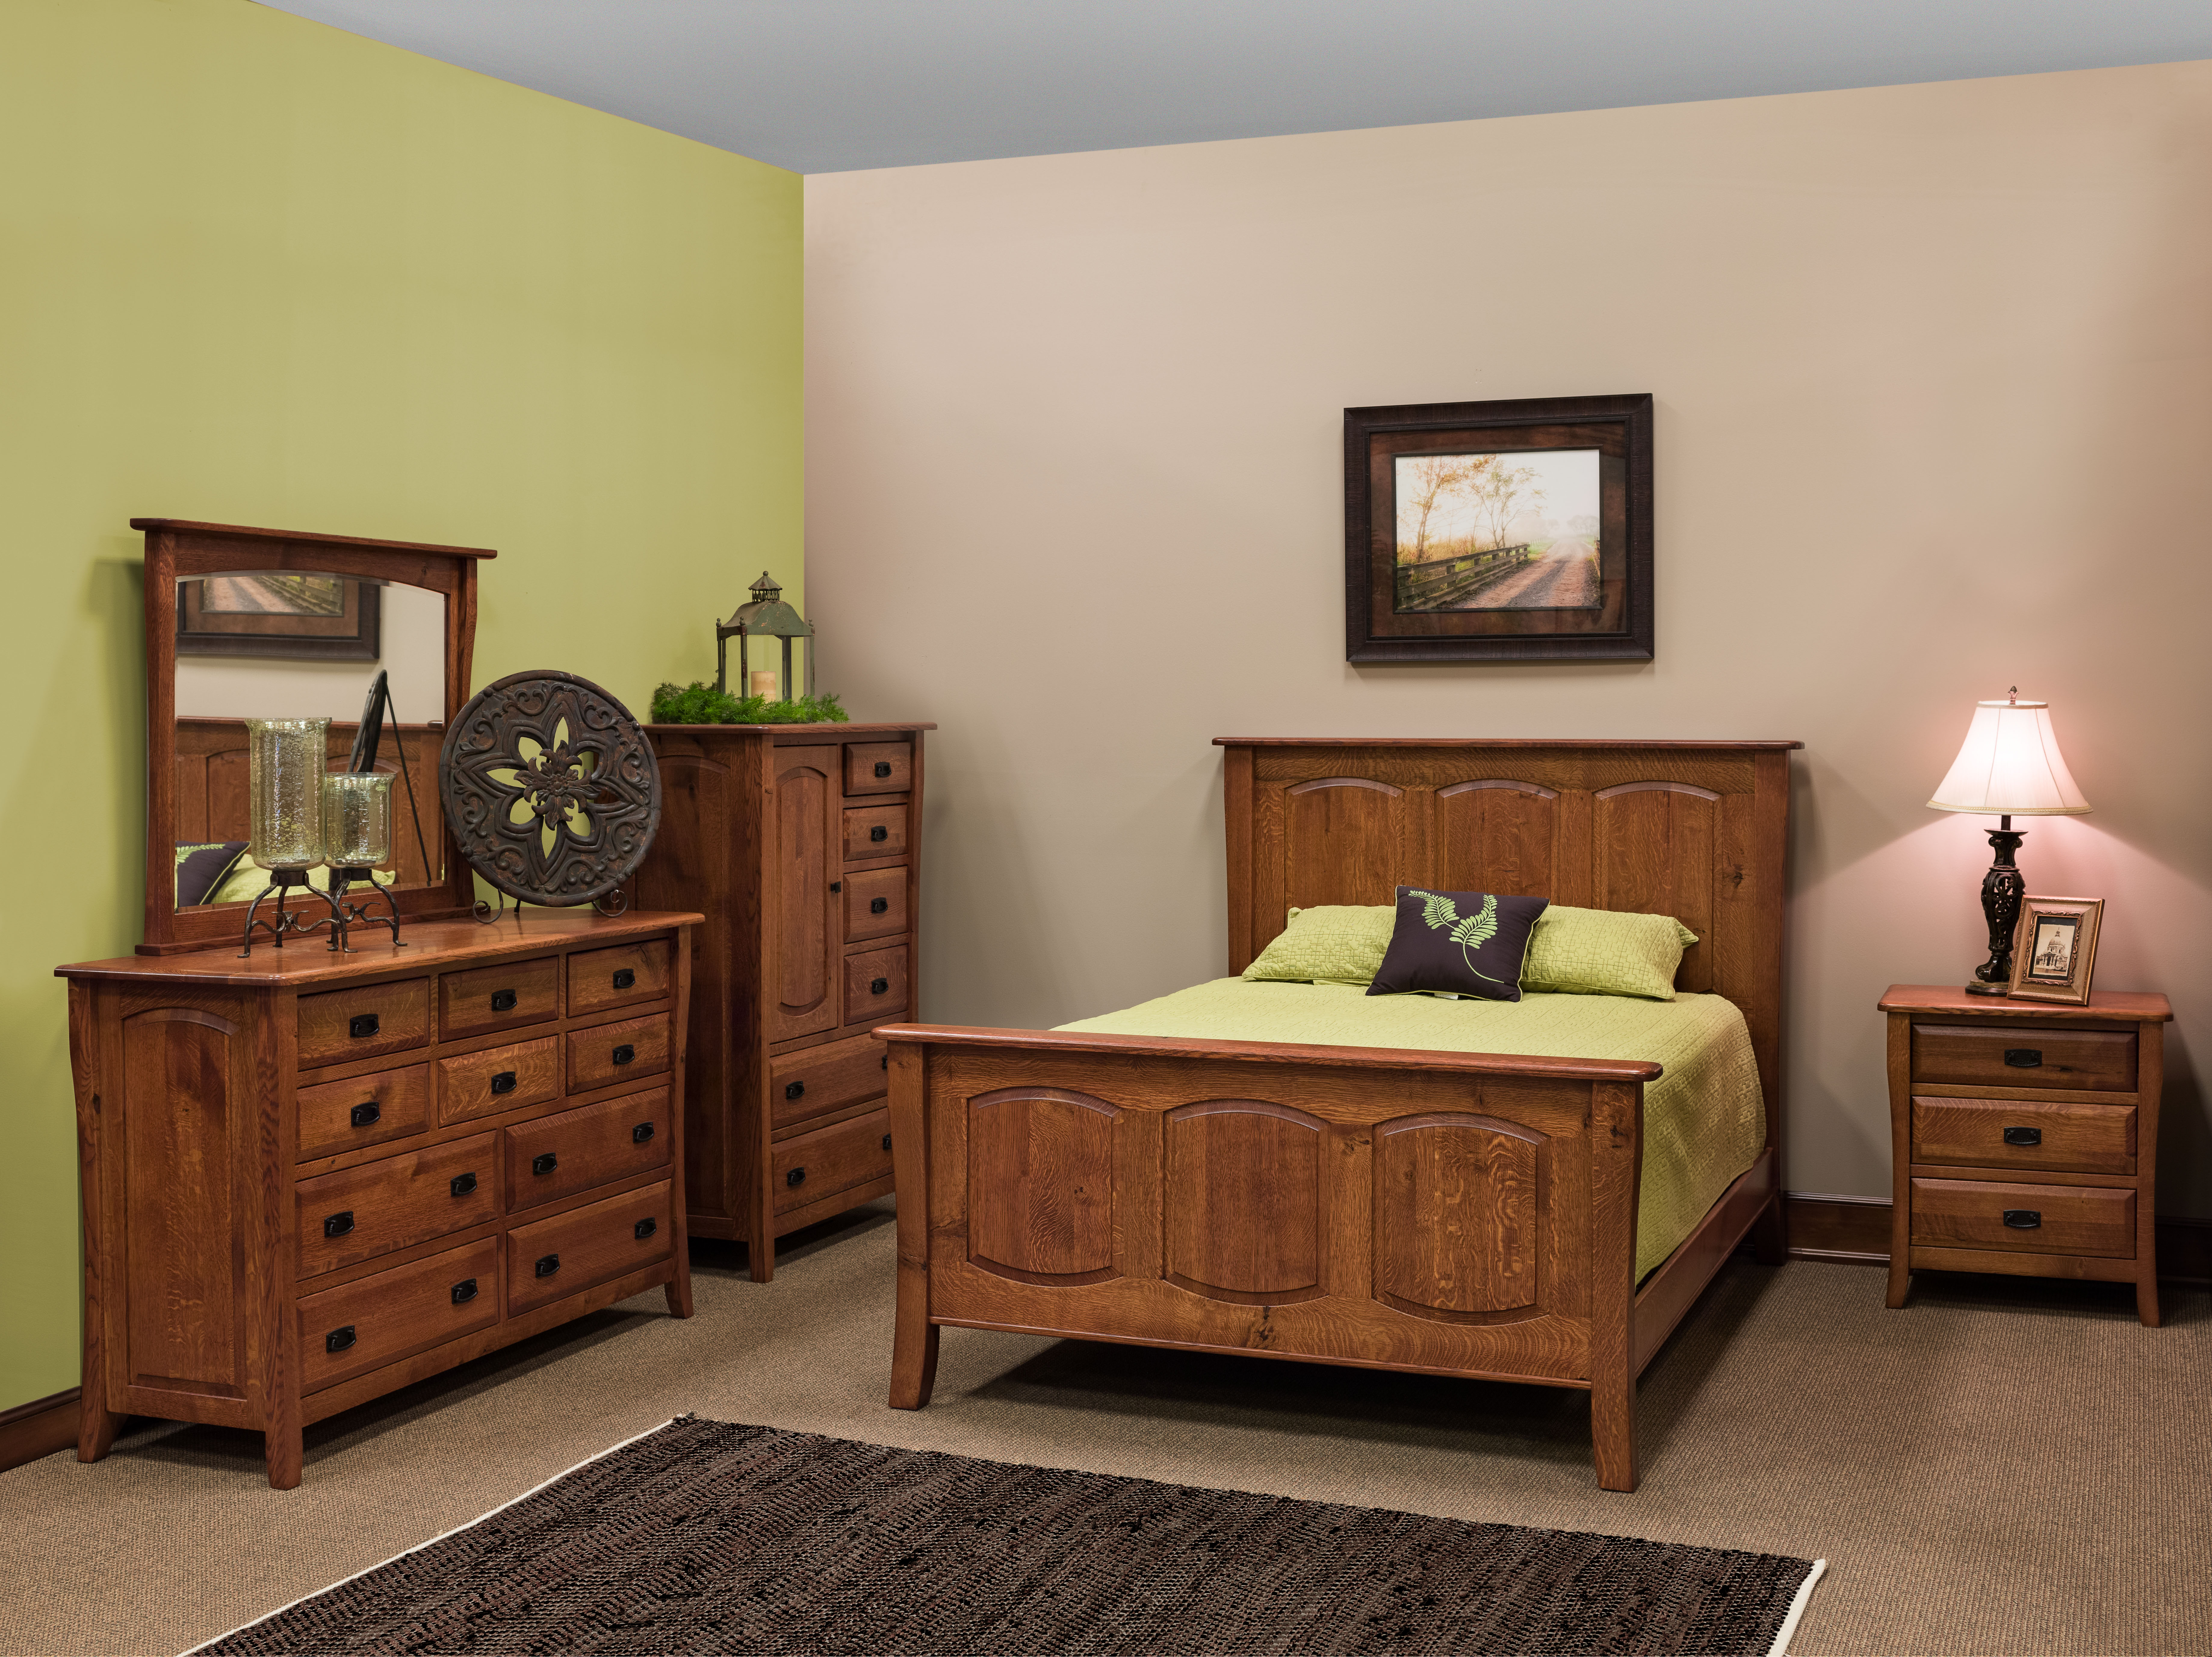 berkley bedroom furniture collection